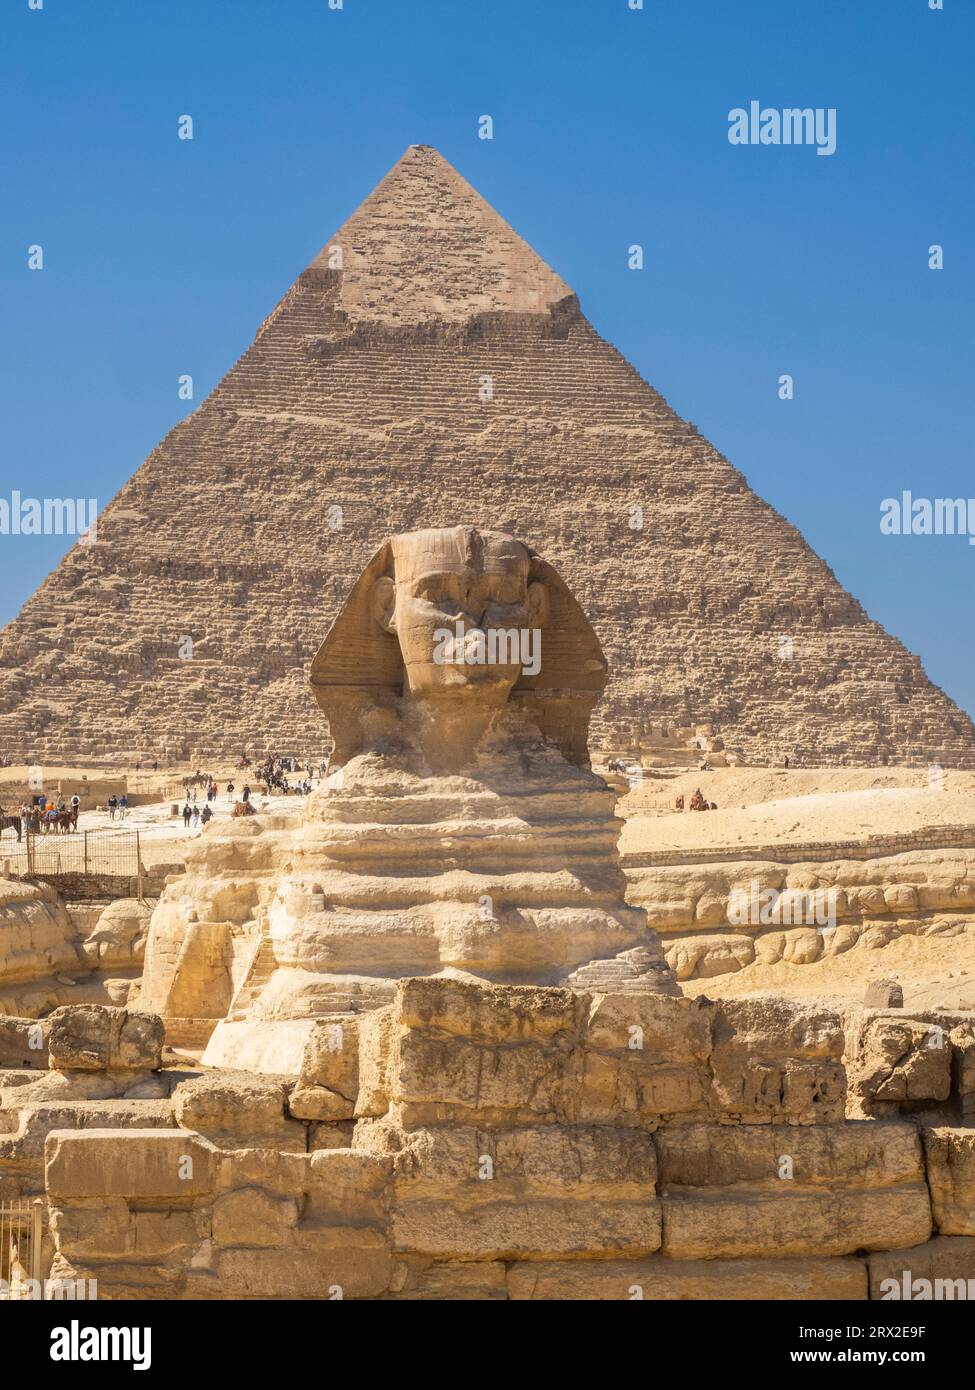 Die große Sphinx von Gizeh, eine Kalksteinstatue einer liegenden Sphinx, UNESCO-Weltkulturerbe, Gizeh-Plateau, Westufer des Nils, Kairo, Ägypten Stockfoto